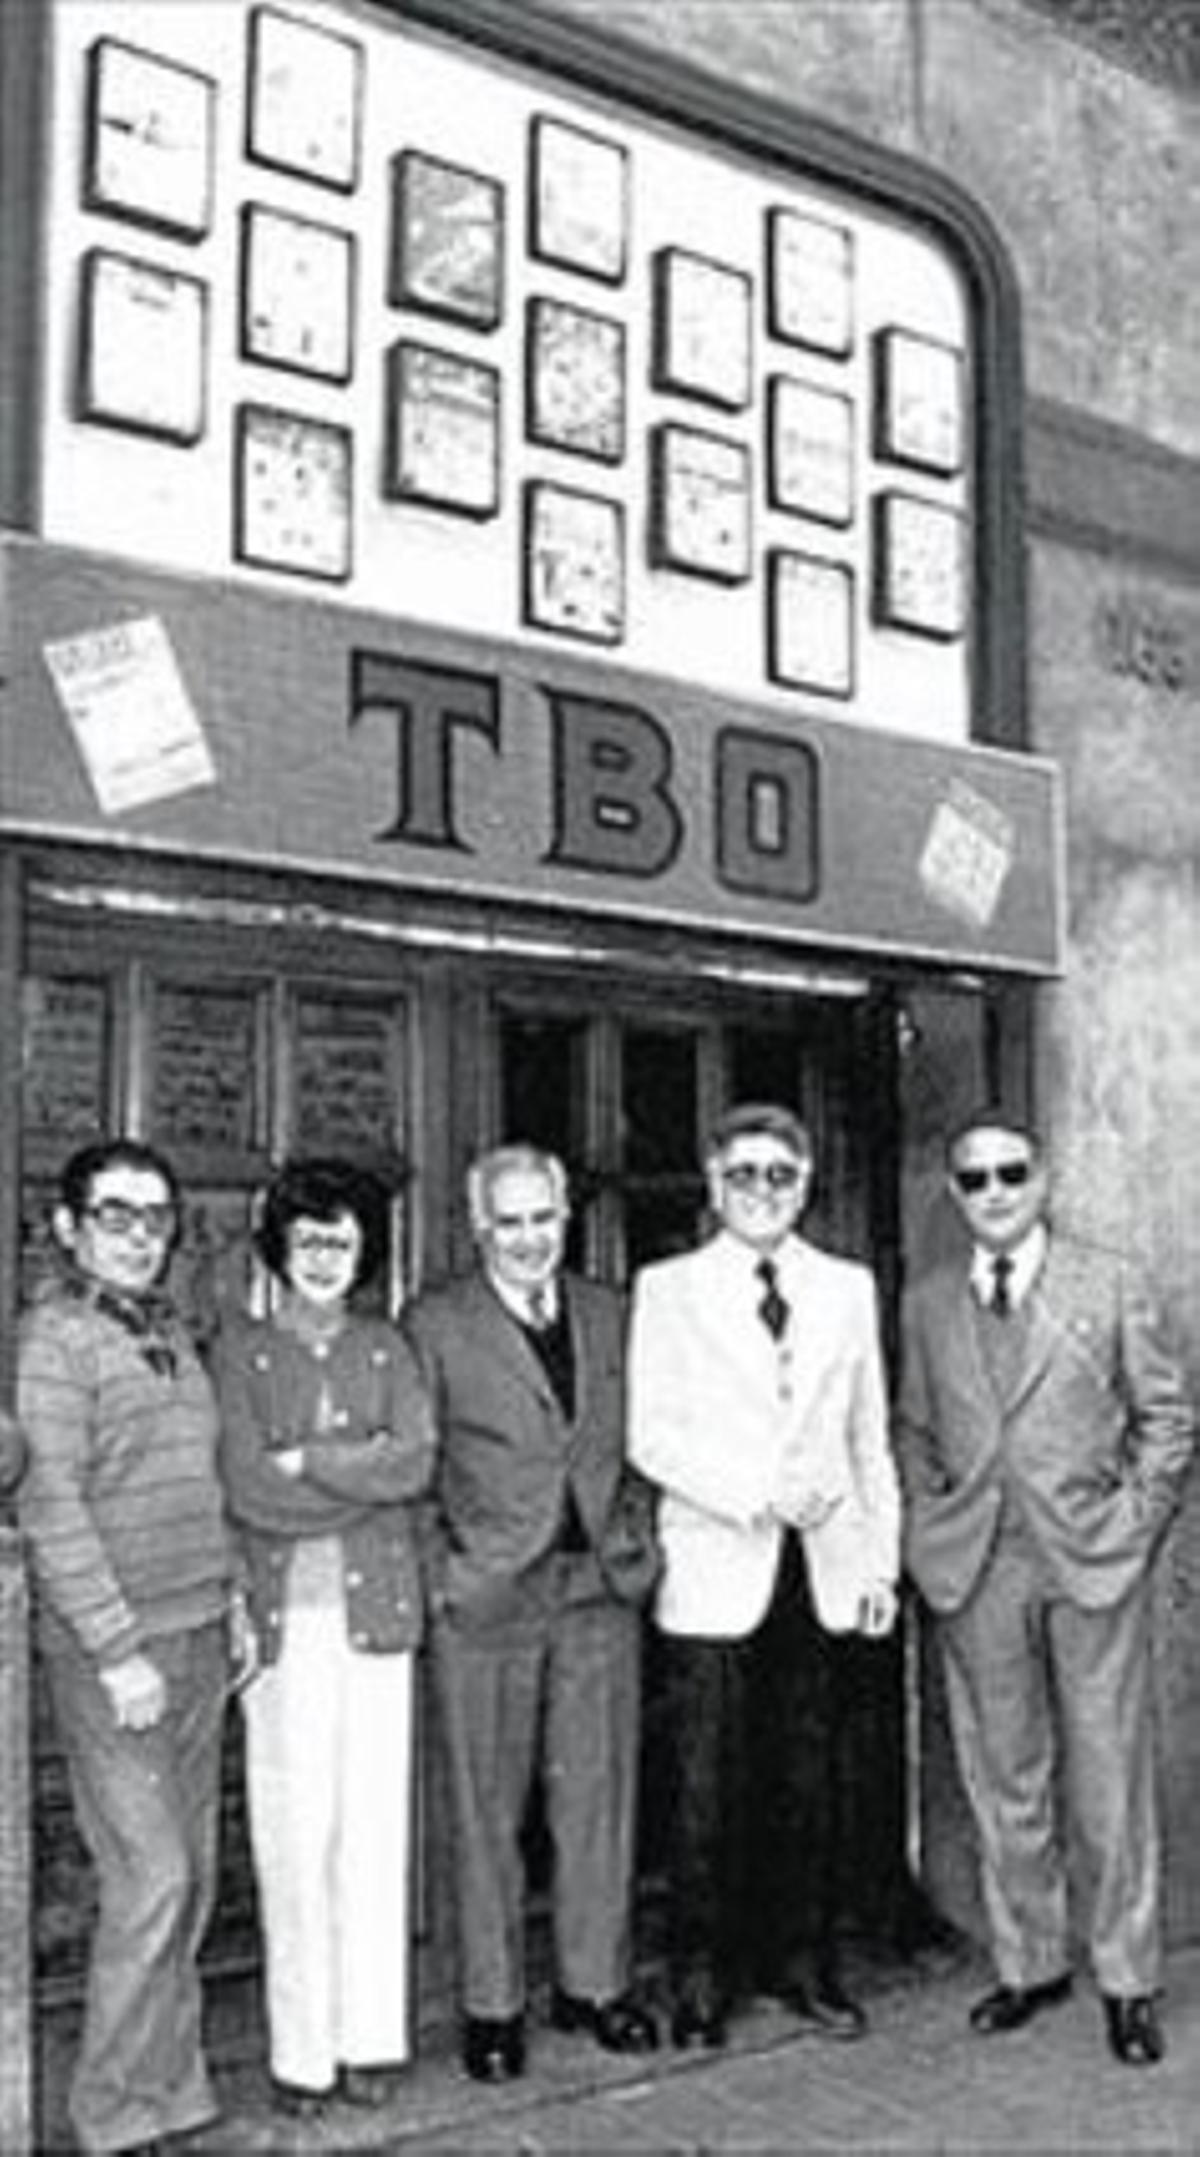 Hoy y ayer 8Rosa Segura, con un antiguo ejemplar del ’TBO’ en su casa (arriba). Abajo, en 1983, en la puerta de la revista, con el director, Albert Viña (americana blanca), y el guionista Carles Bech (gafas de sol).